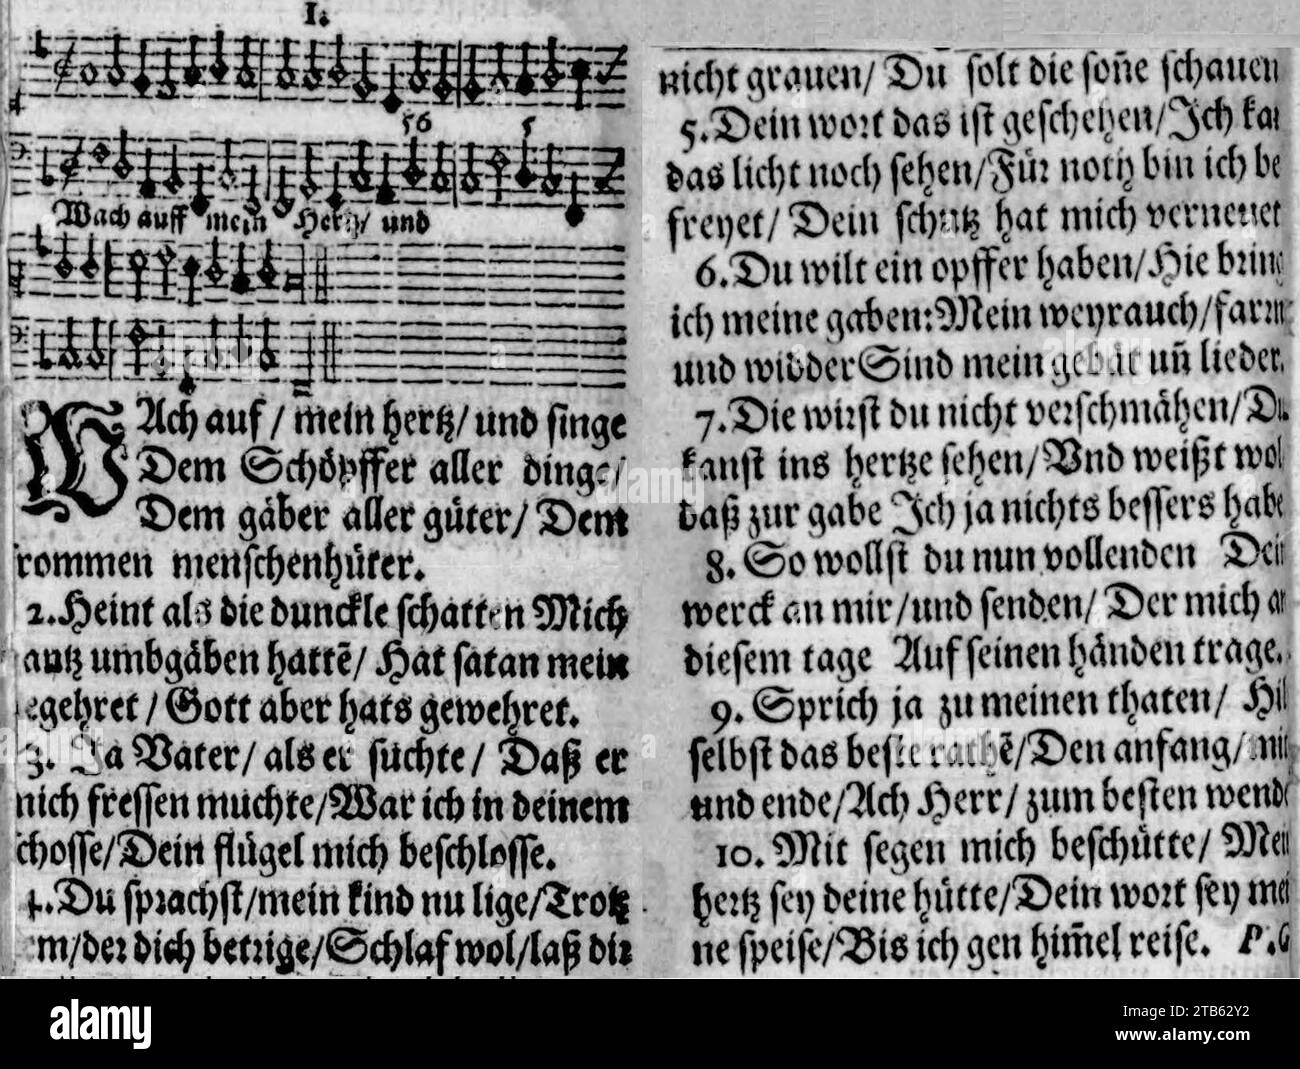 Wach auf, mein Herz, und singe (Praxis Pietatis Melica 1653). Stock Photo